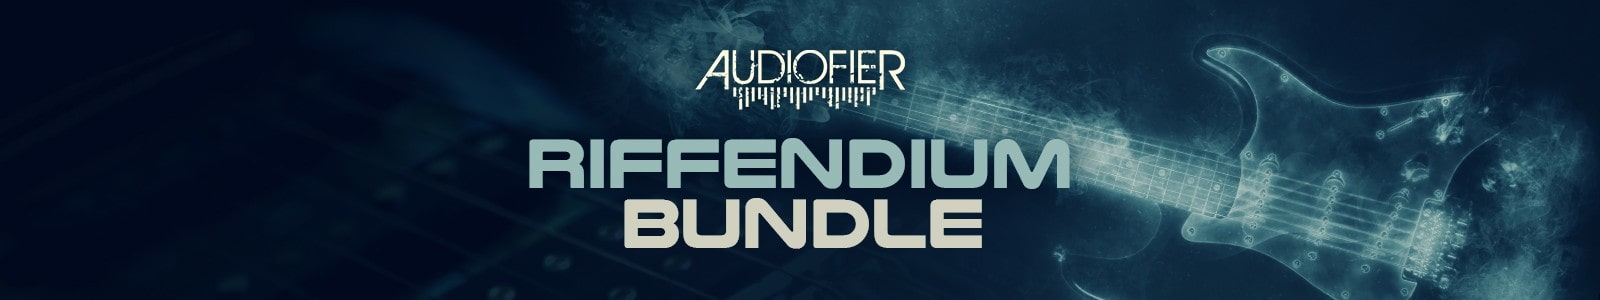 Audiofier Riffendium Total Bundle